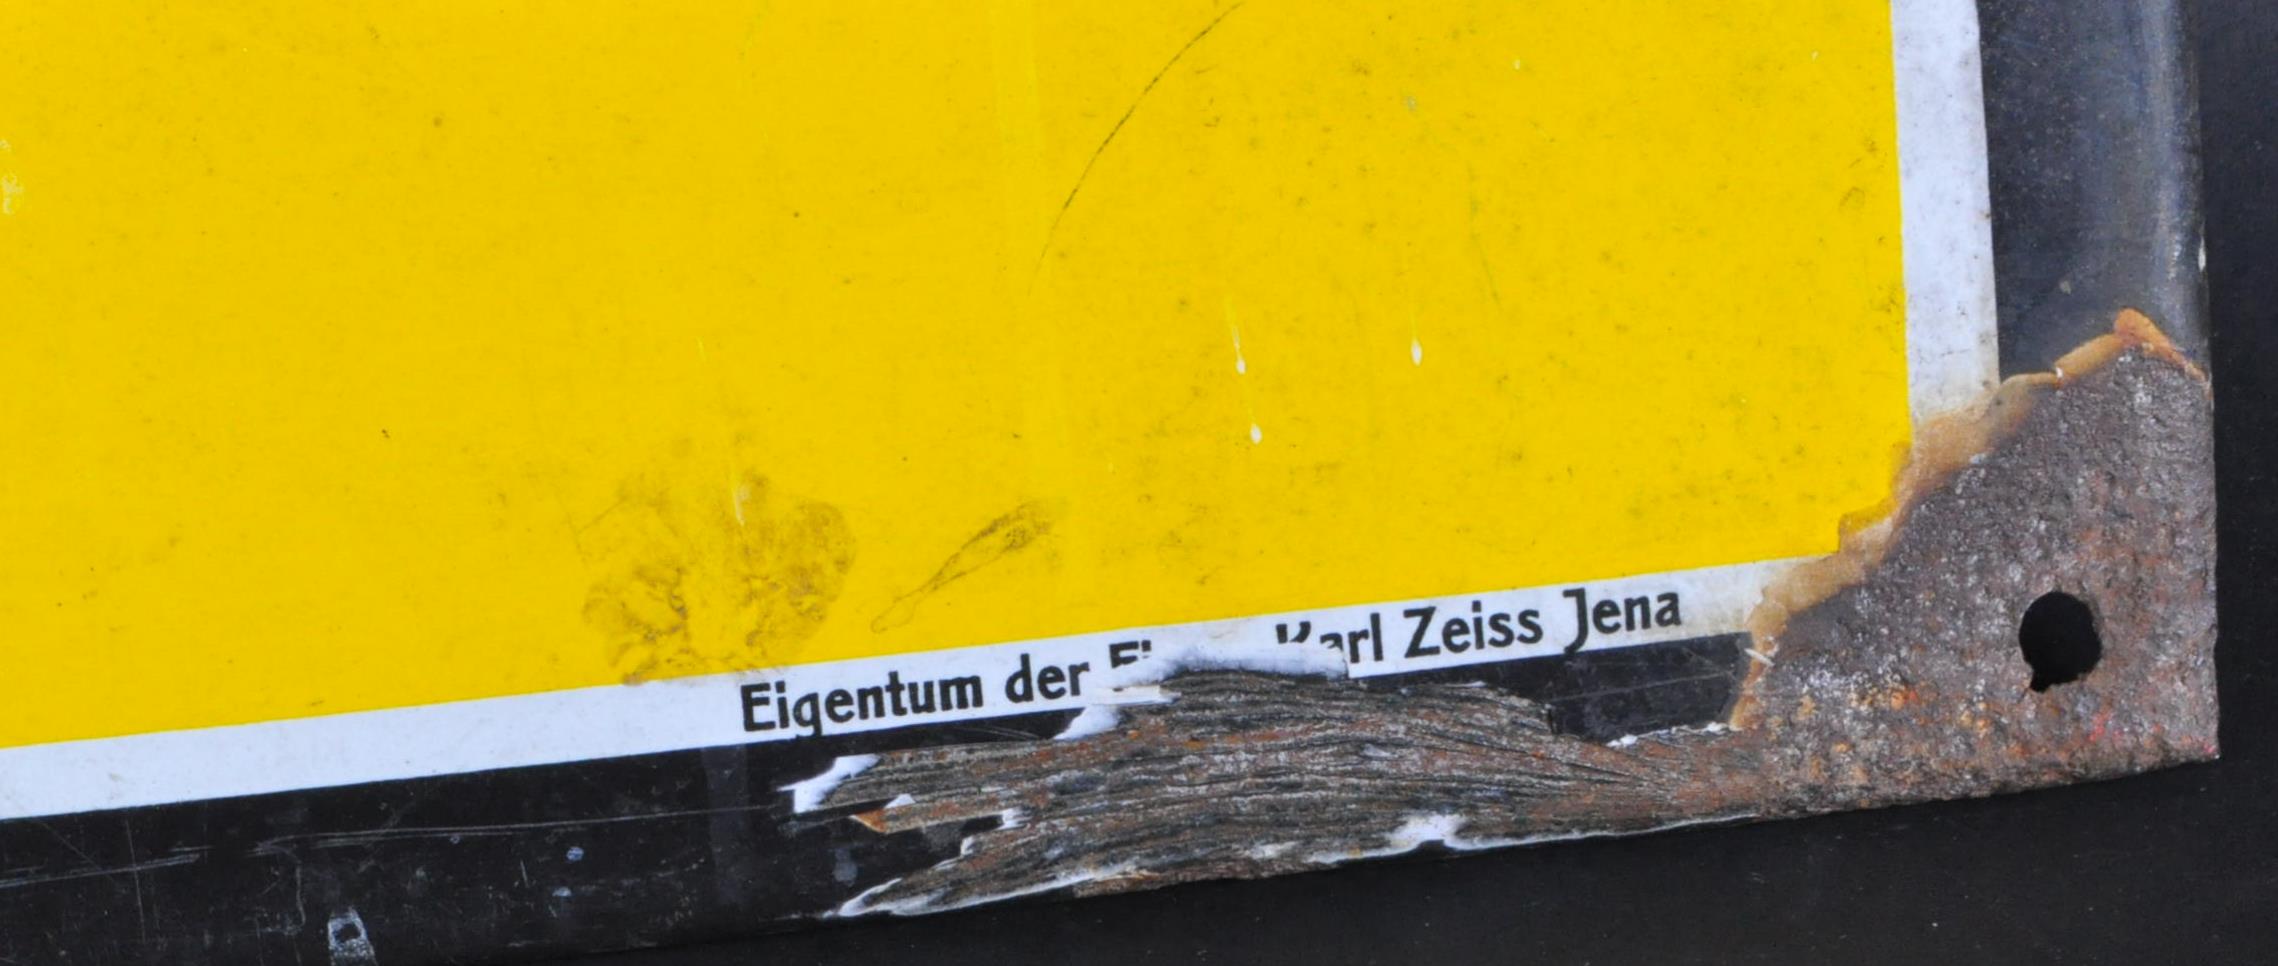 CARL ZEISS - ZEISS - ORIGINAL C1930S ENAMEL ADVERTISING SIGN - Image 5 of 6